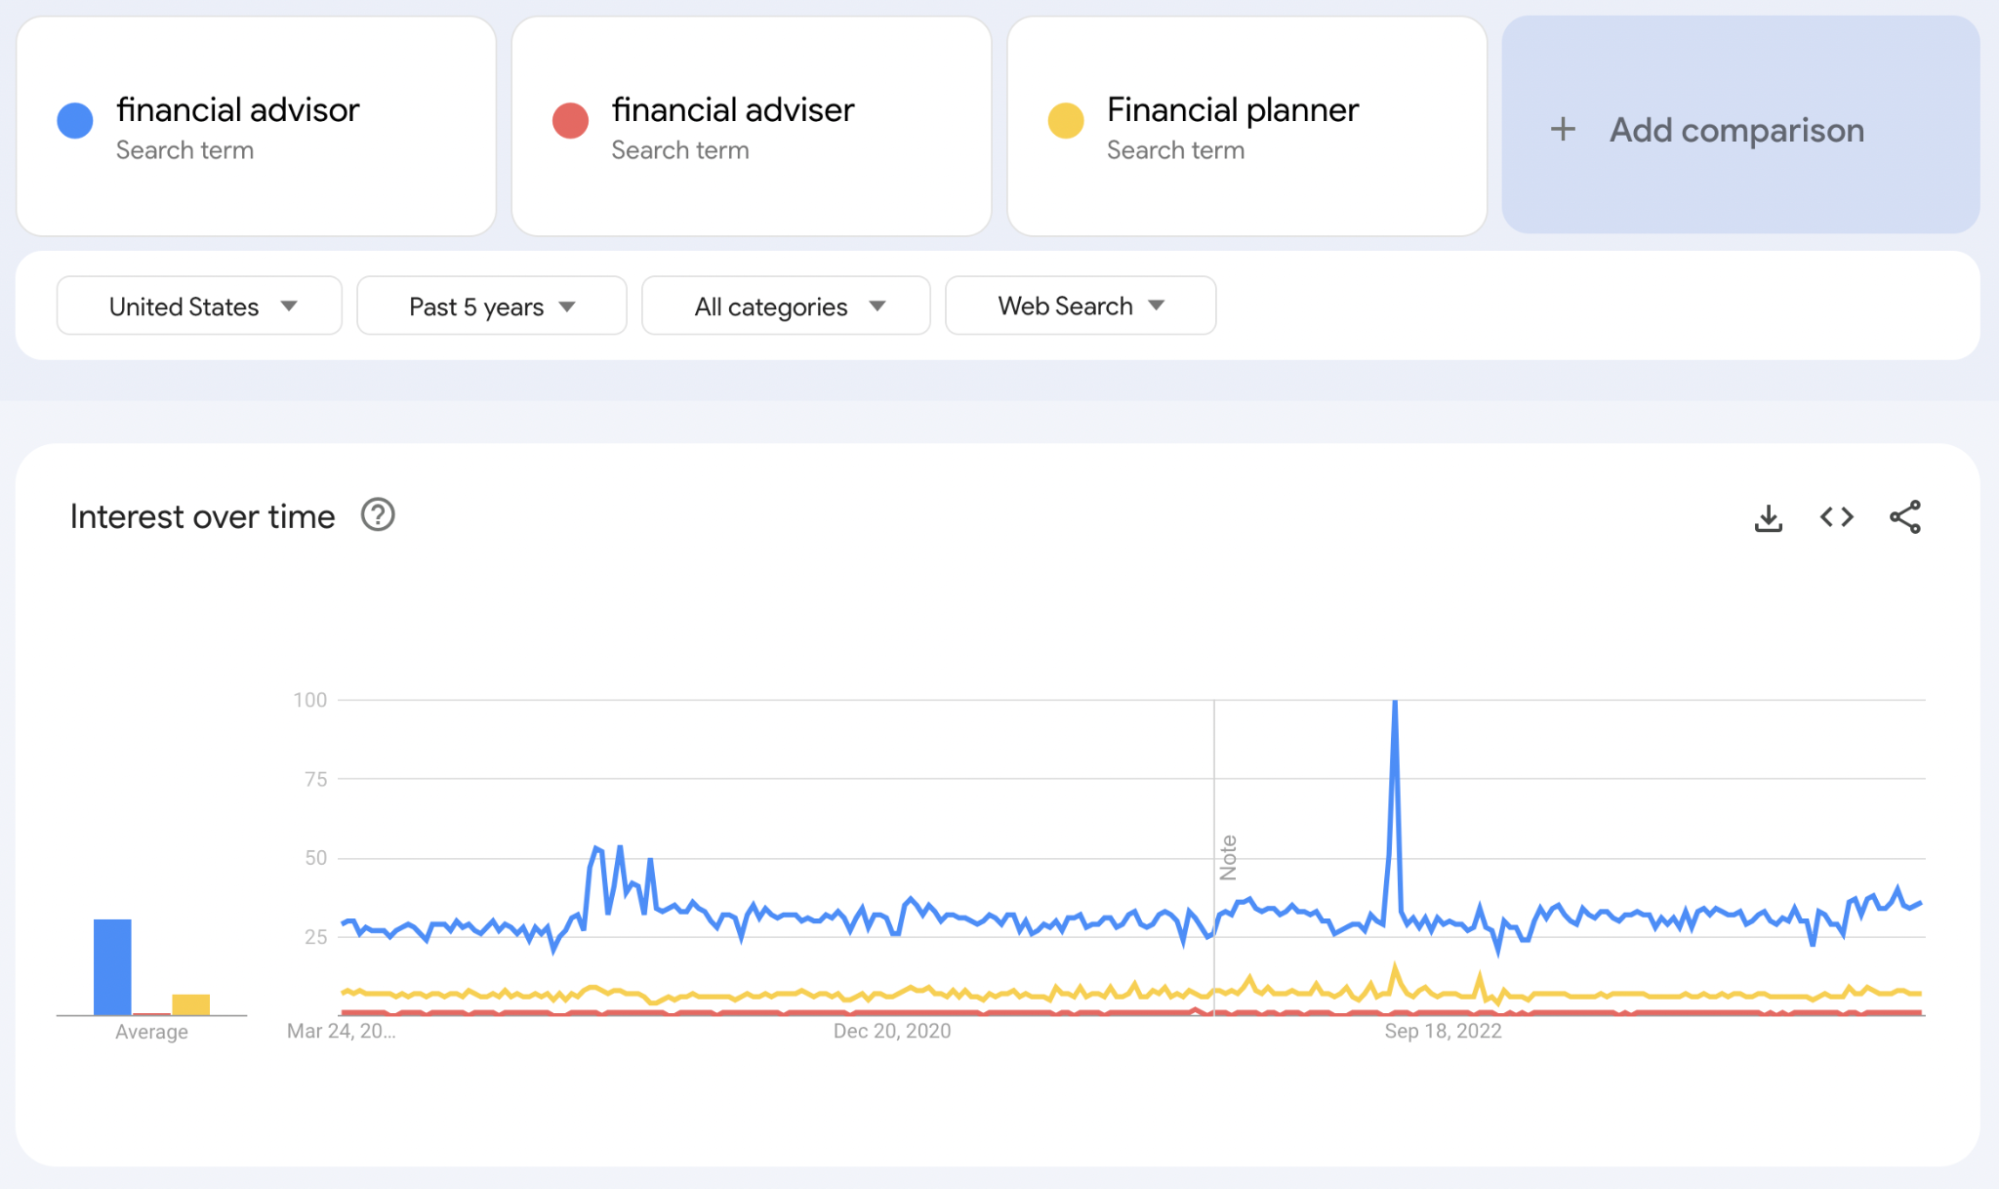 Google Trends comparison between “financial advisor”, “financial adviser”, and “financial planner”.